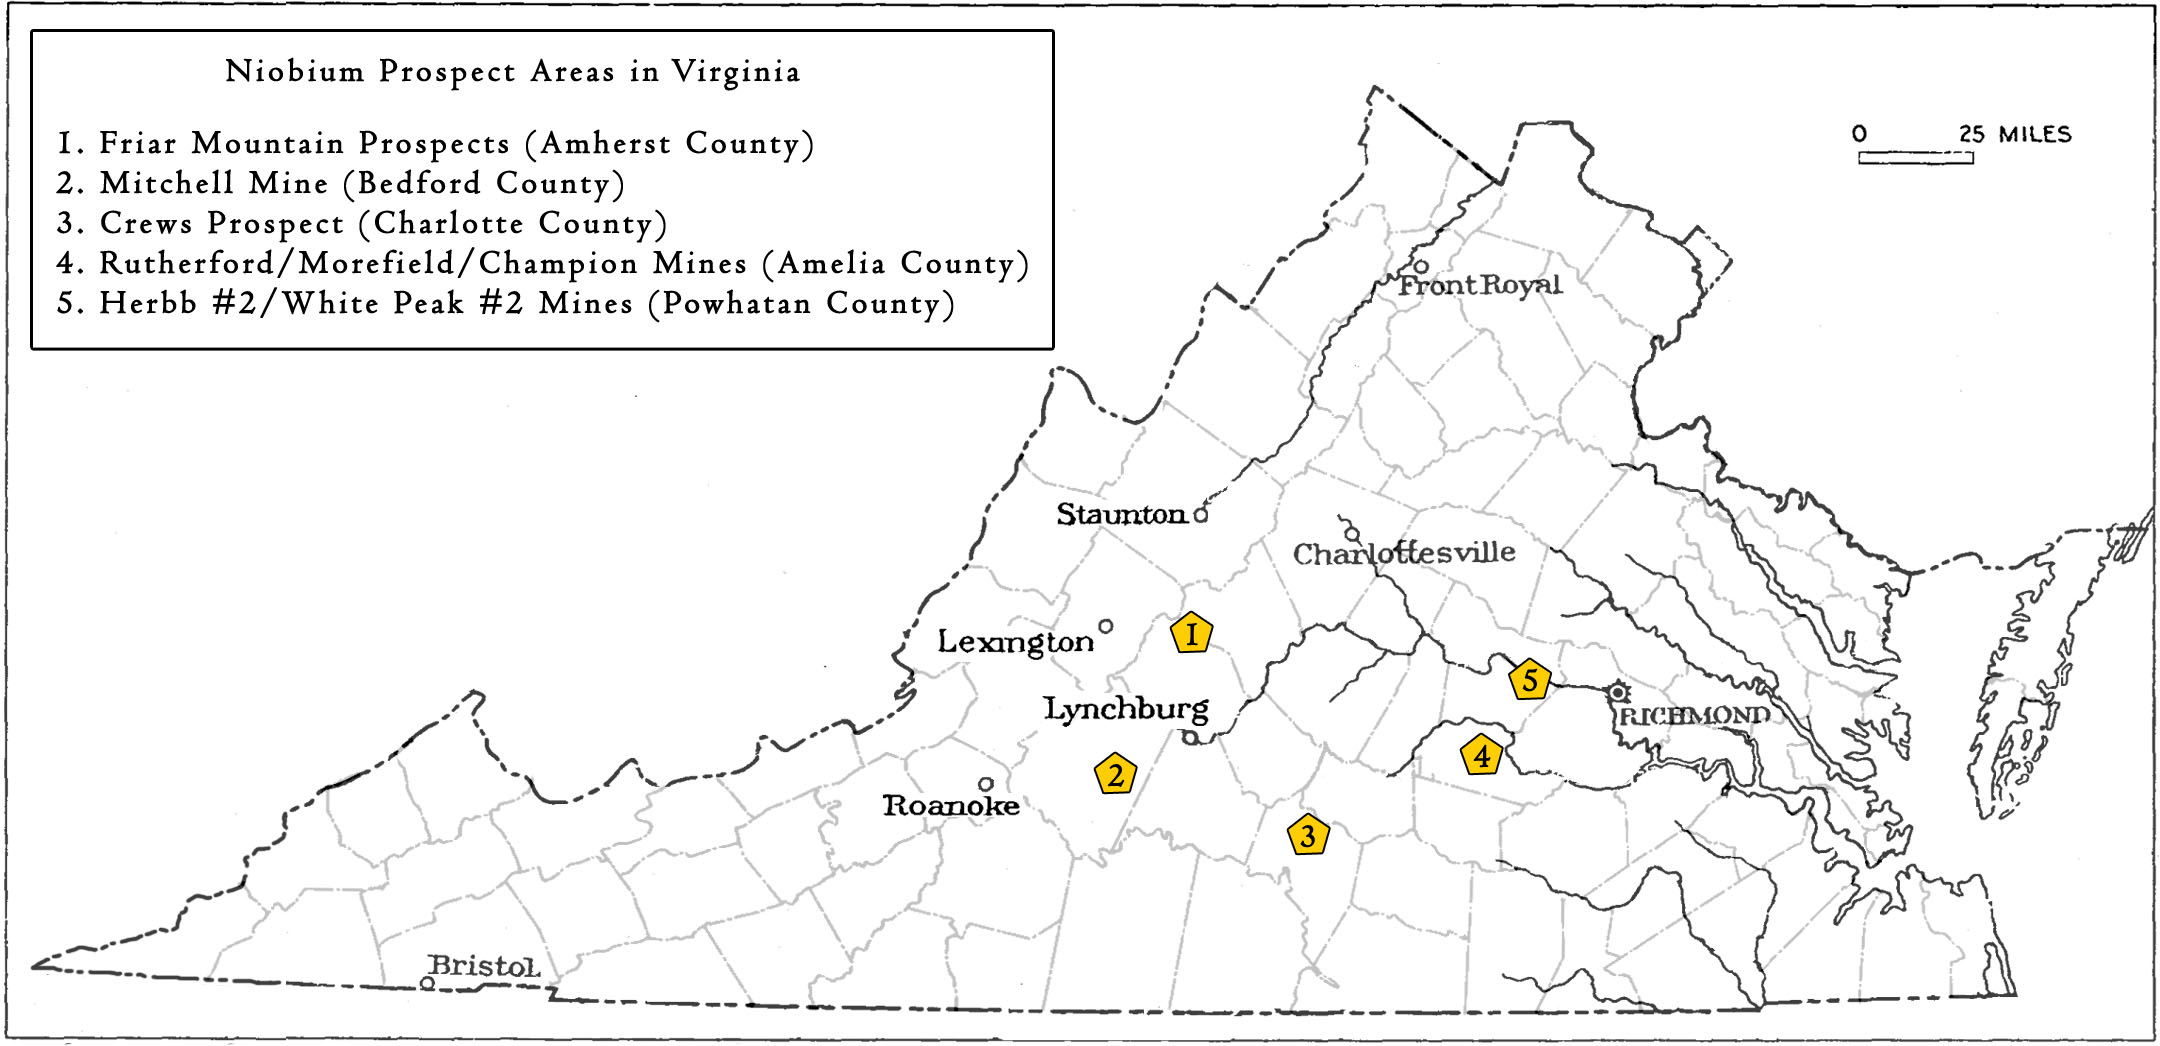 Locations in Virginia sampled or prospected for Niobium